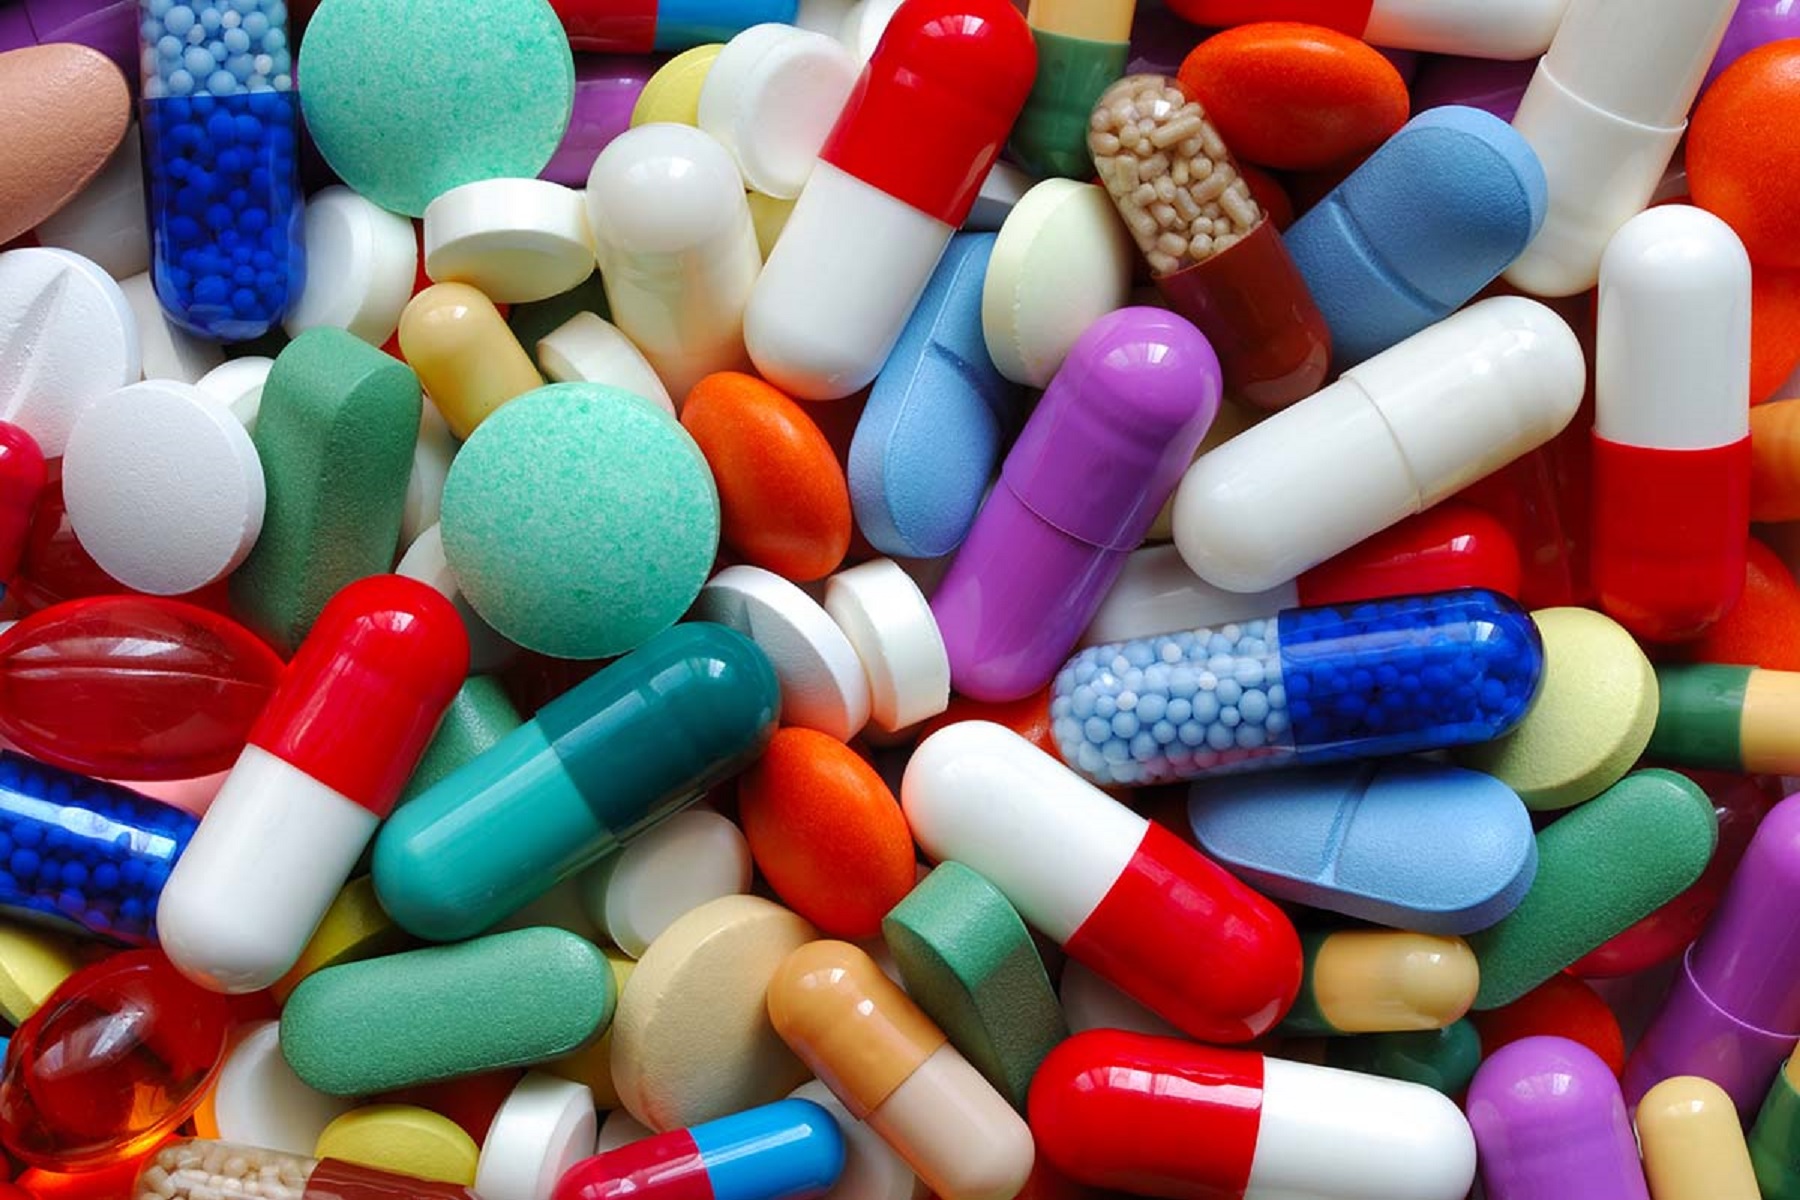 ΕΕ – Κυριακίδου: Ανησυχητική έλλειψη ευαισθητοποίησης των πολιτών σχετικά με την κατάλληλη χρήση αντιβιοτικών